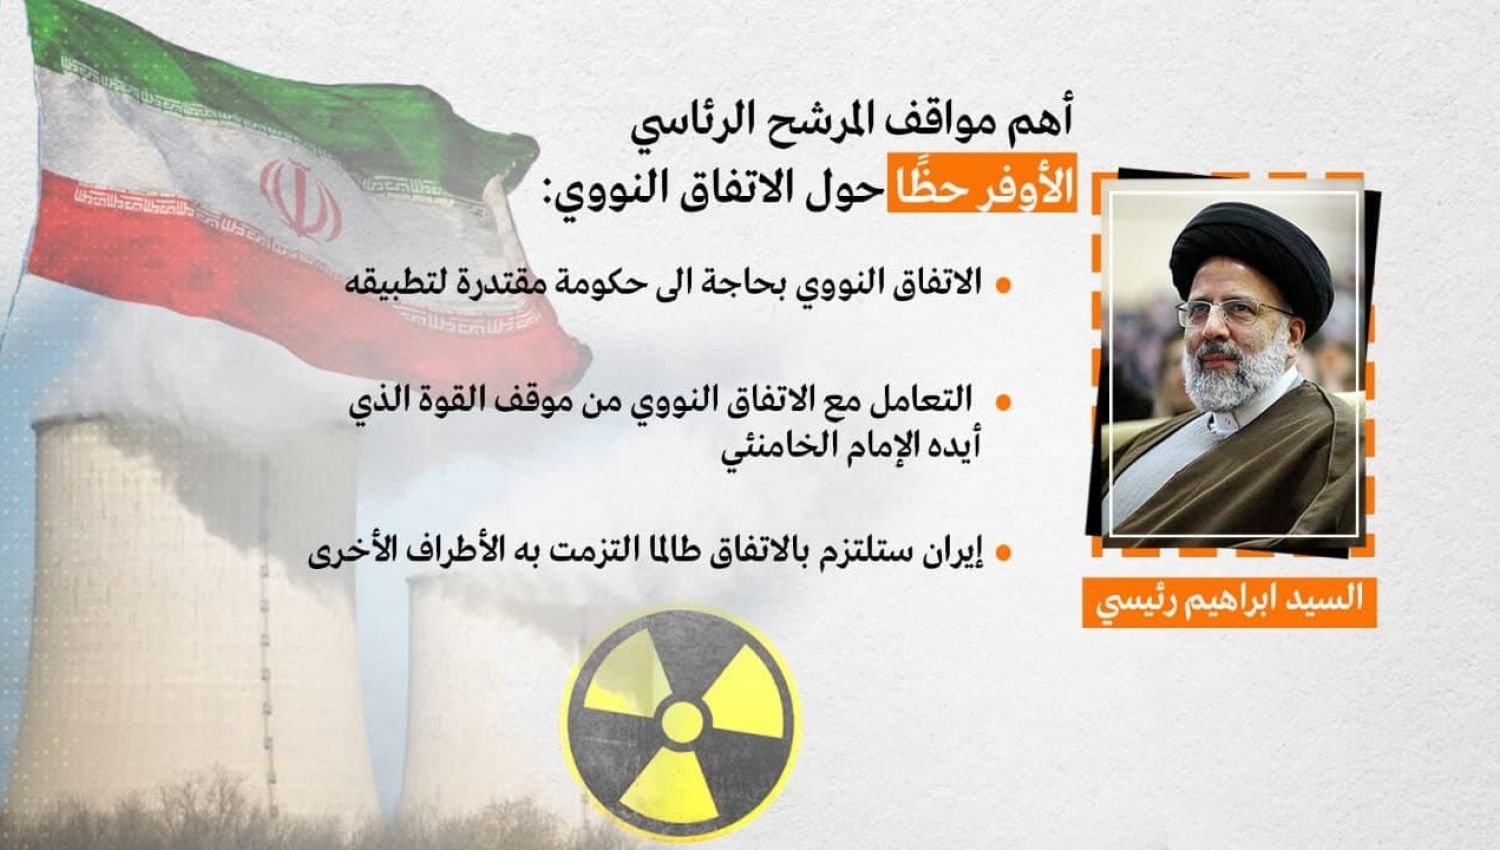 كيف سيؤثر فوز السيد إبراهيم رئيسي على الاتفاق النووي؟